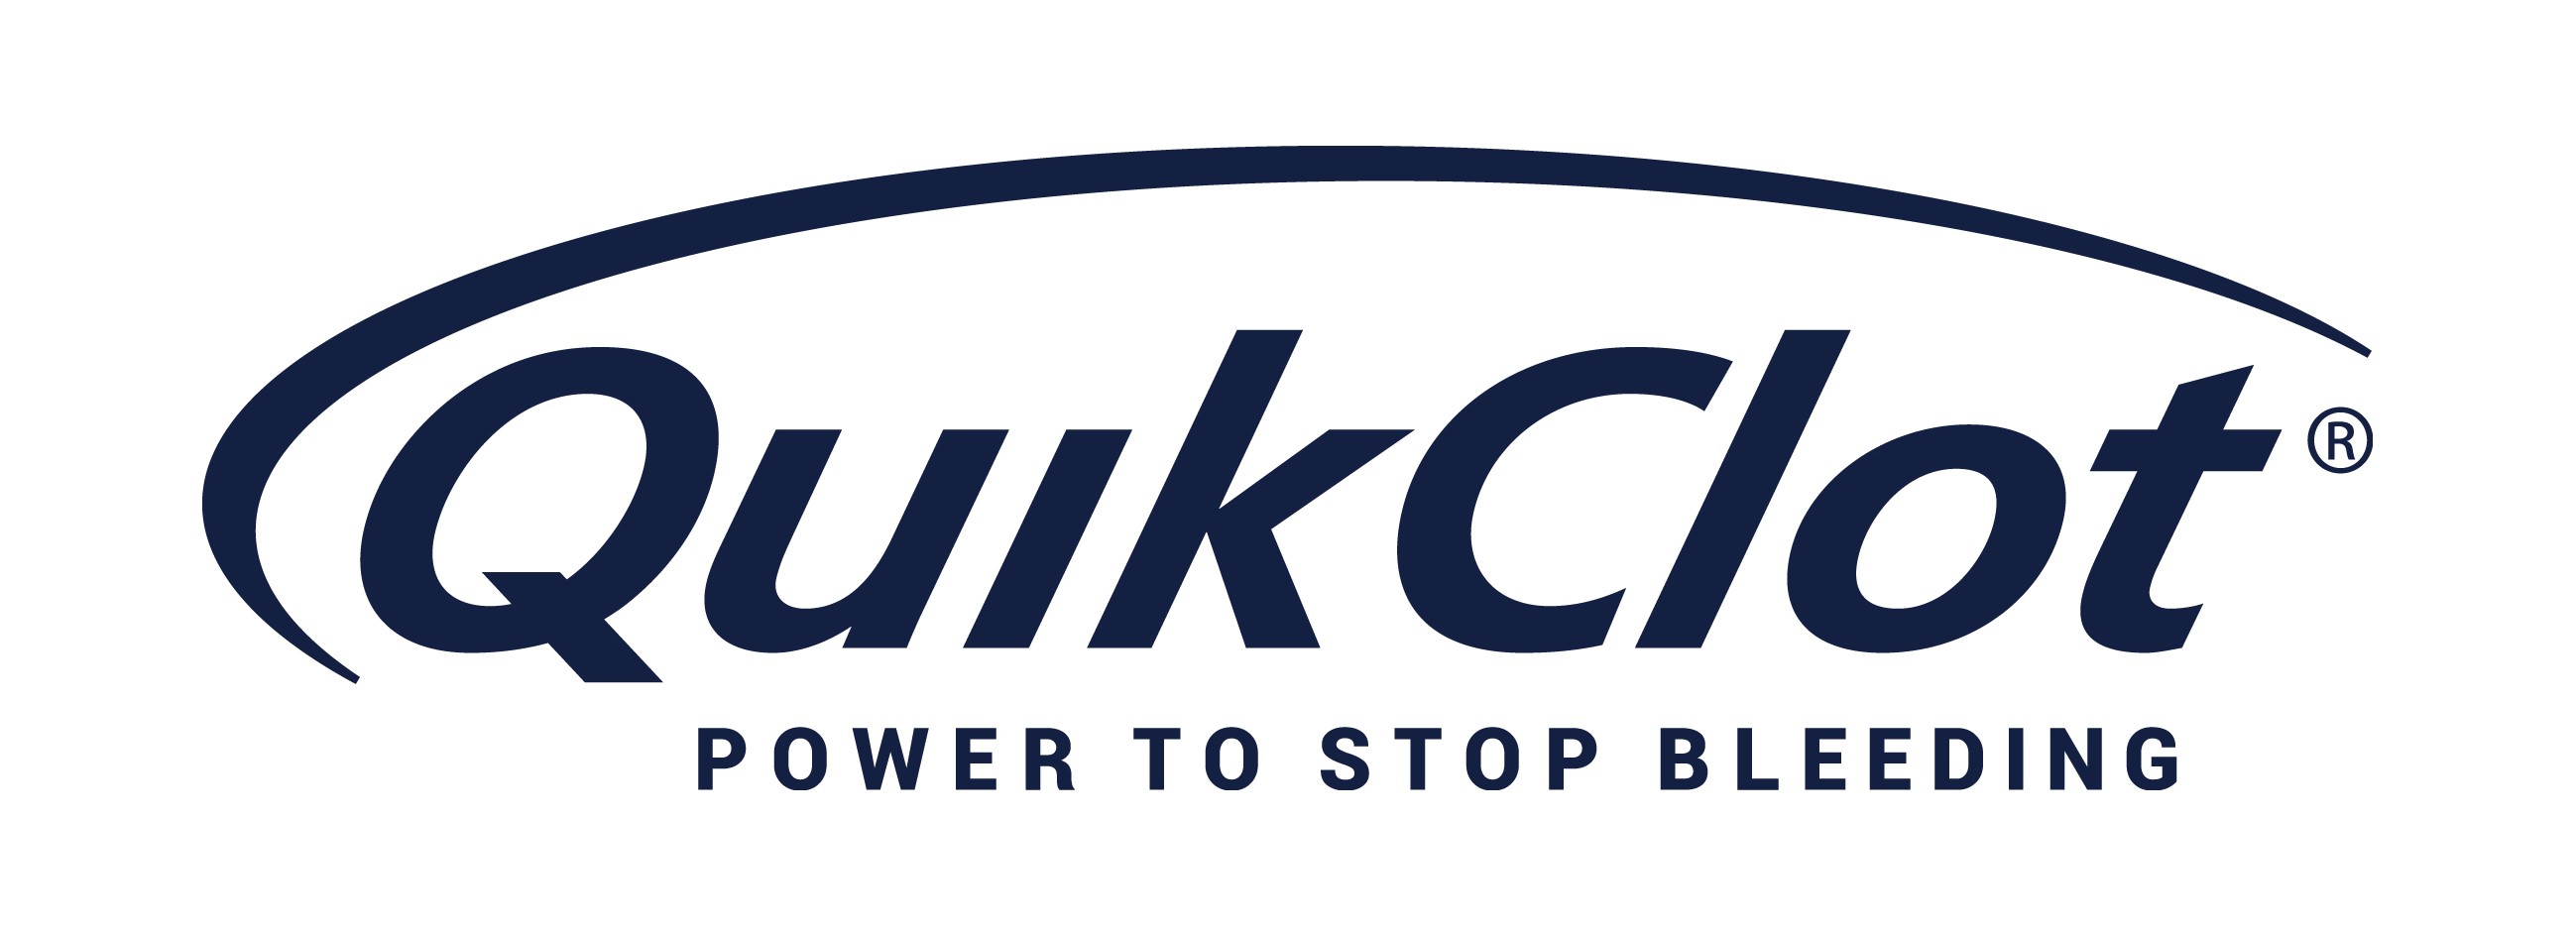 QuikClot